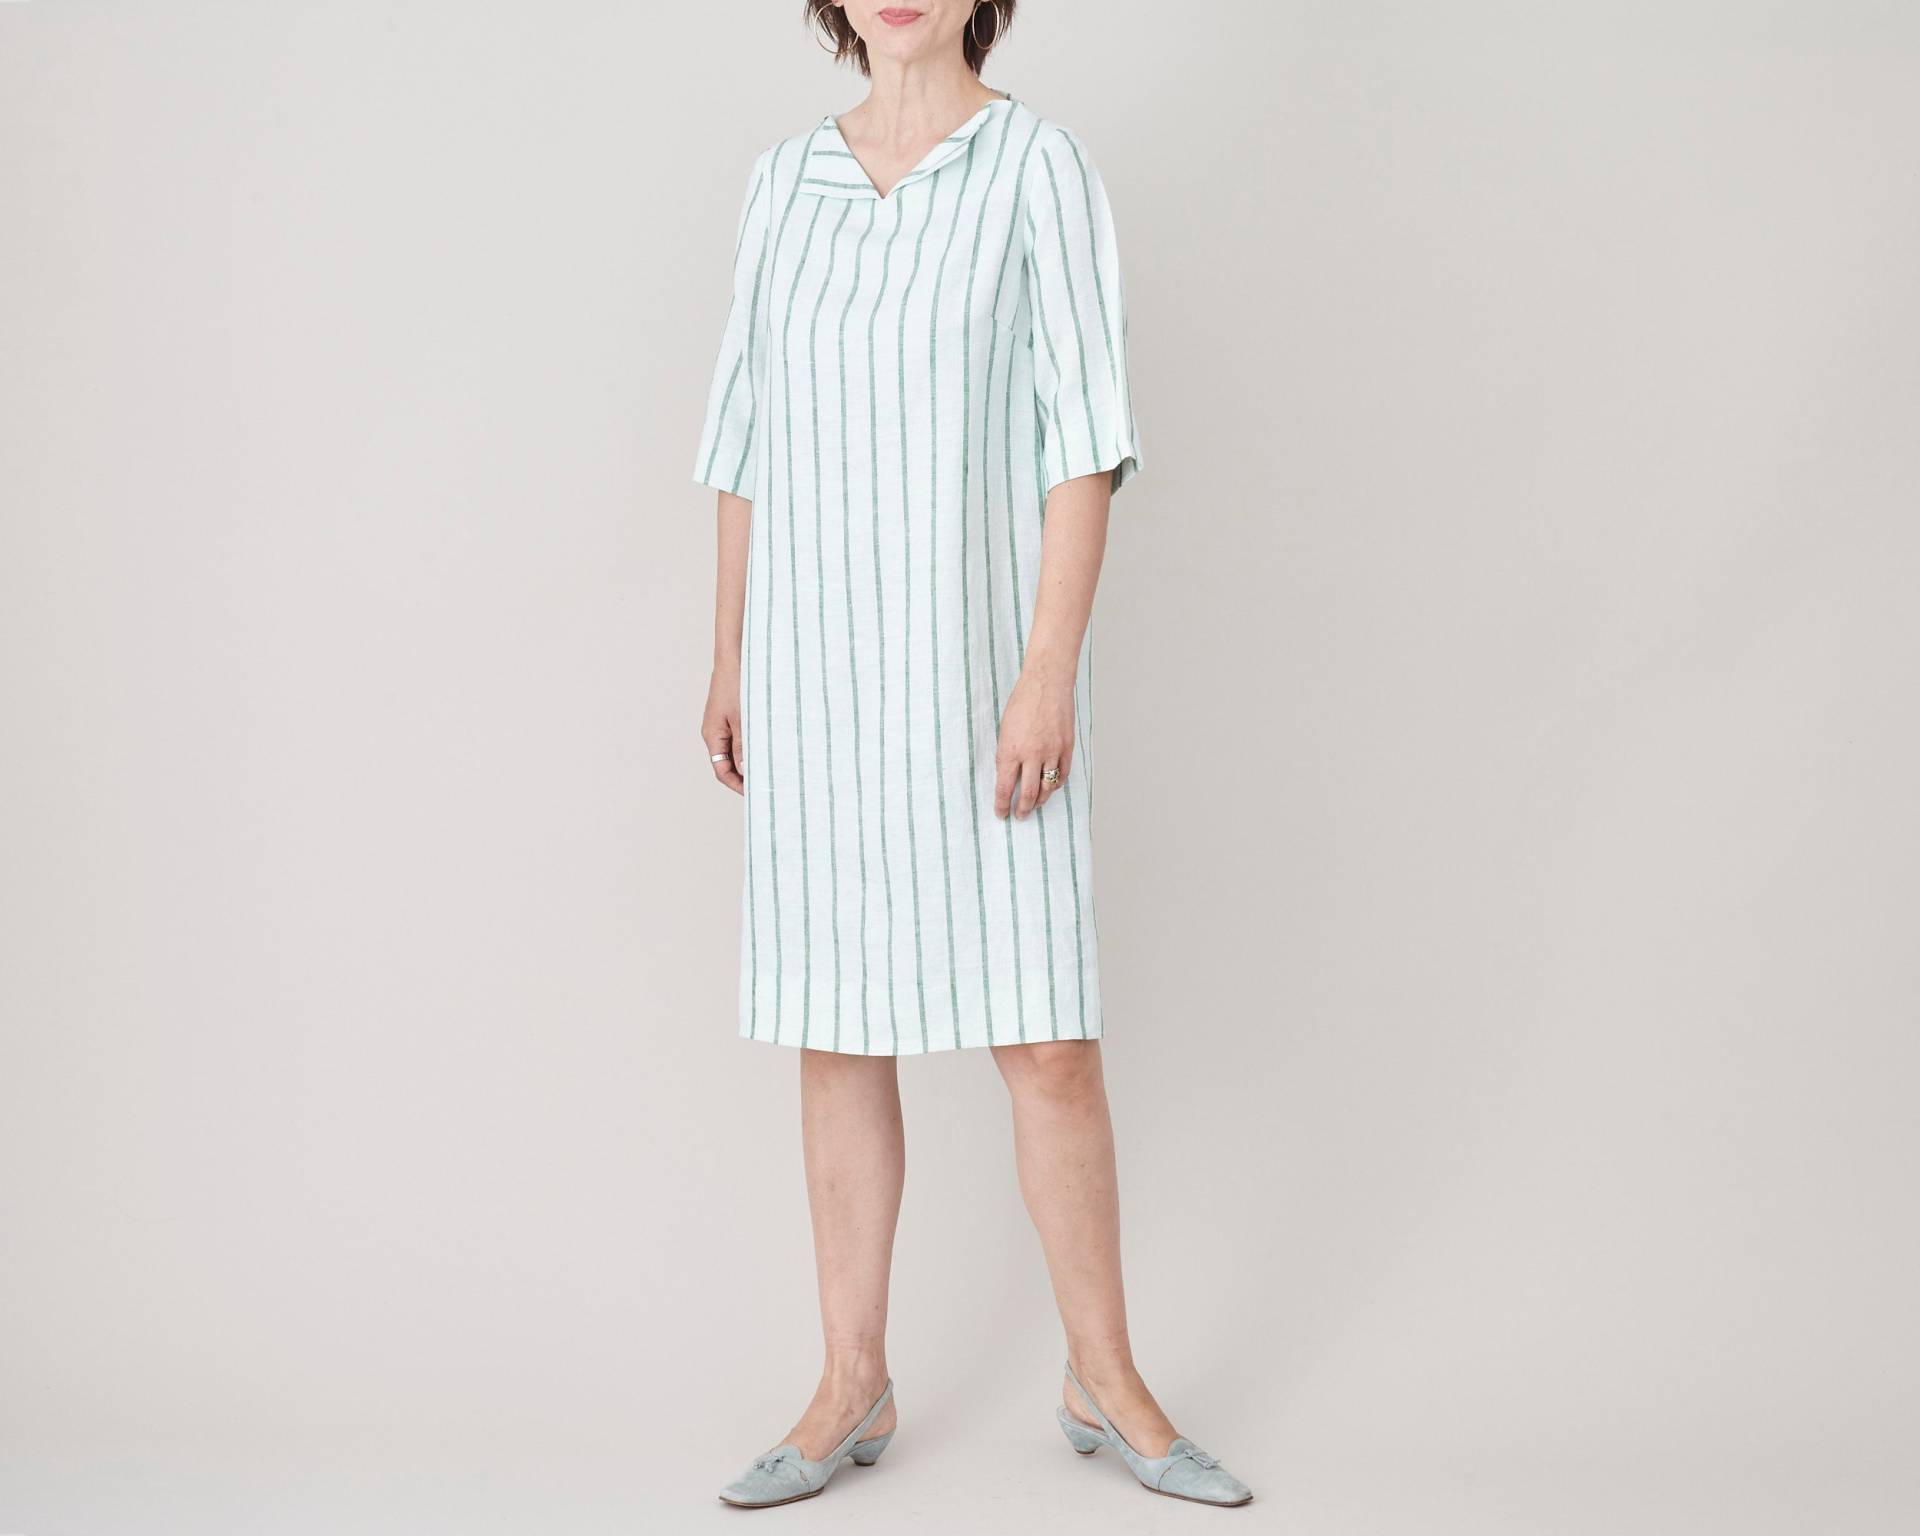 Vintage Leinen Etuikleid Für Frauen Größe Xs - S | Elegantes Gestreiftes Weiß Kleid Mit Futter Halben Ärmeln von FineThee